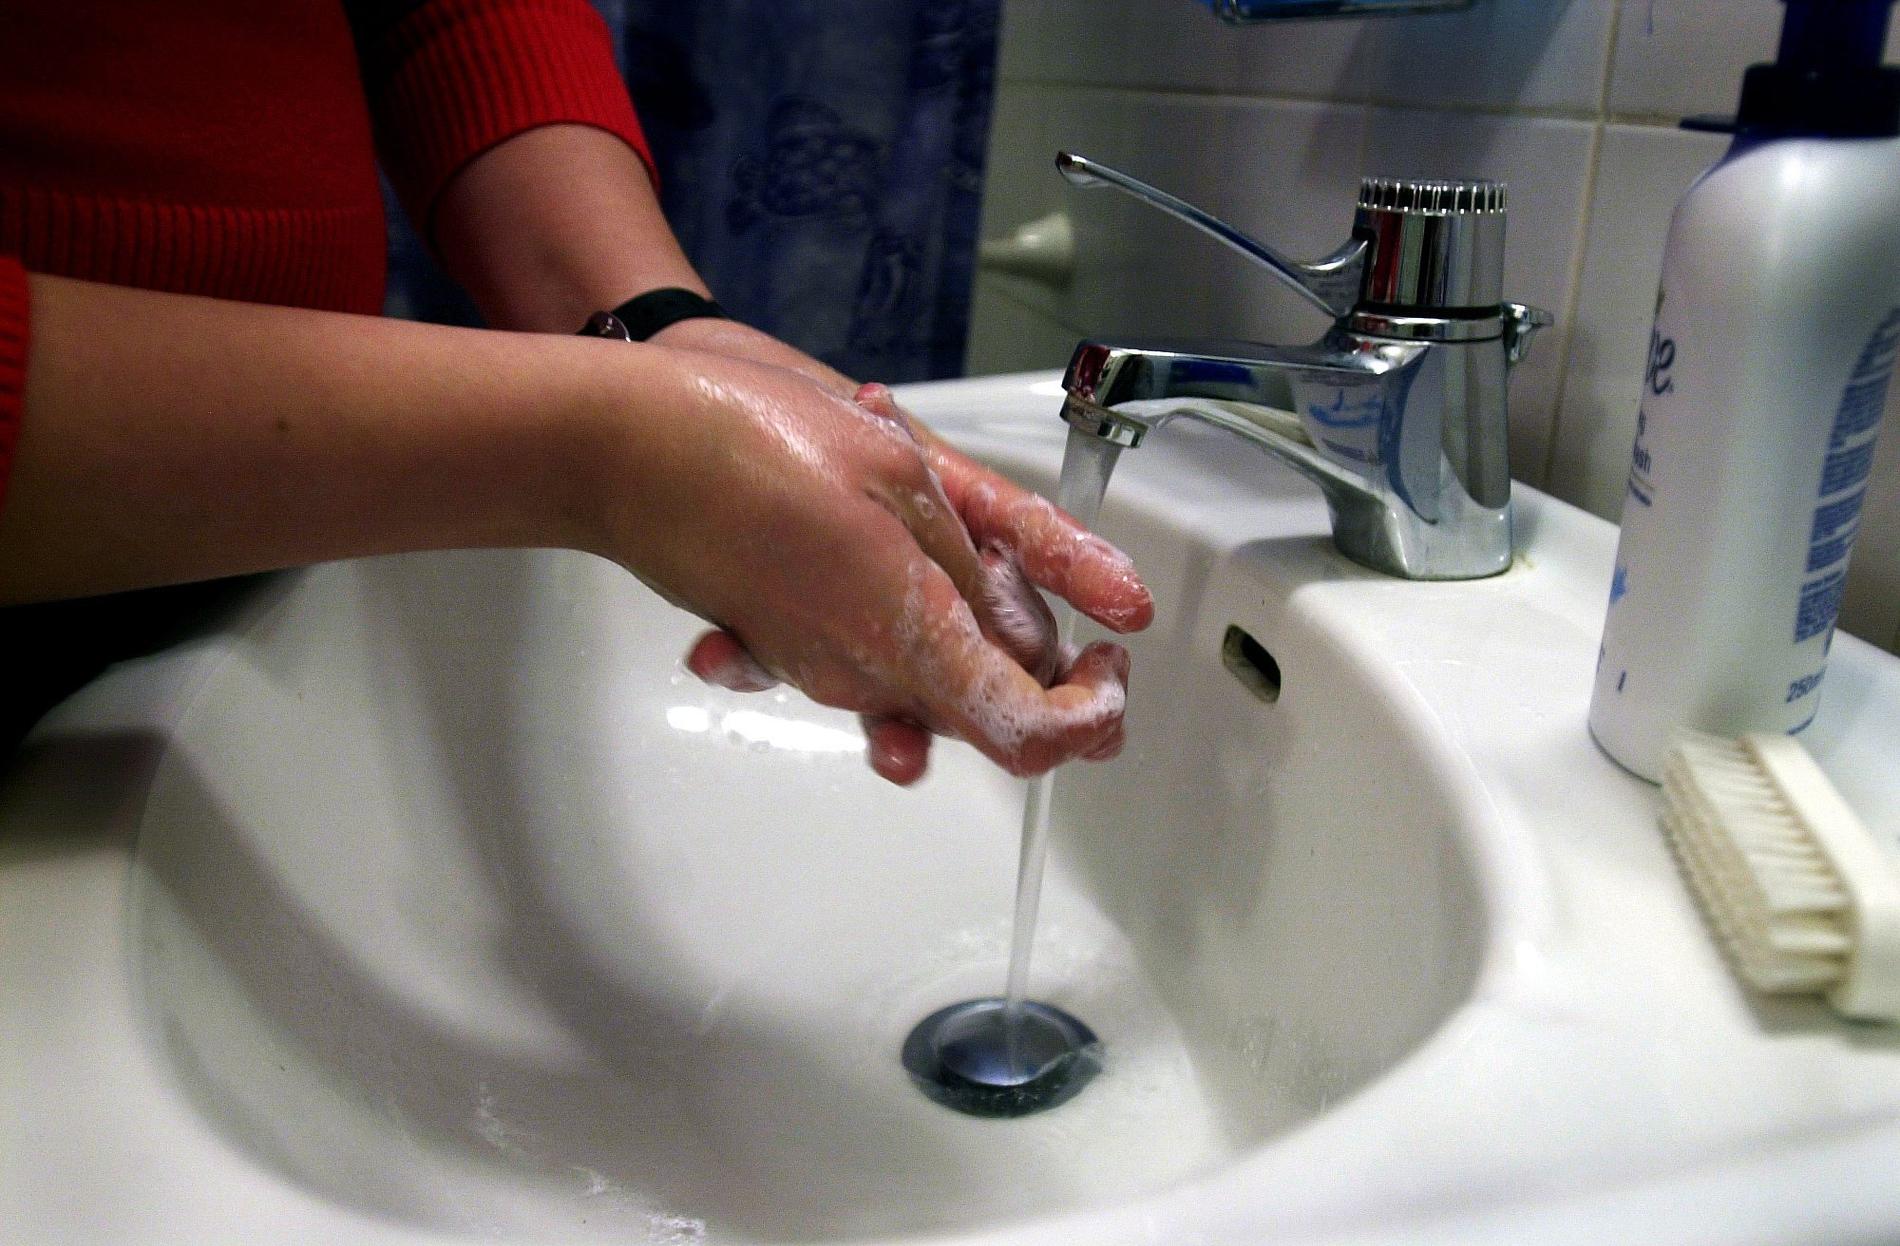 "Det kan smitta lite överallt". Så säger smittskyddsläkaren Sven Montelius om vinterkräksjukan – och påminner om att man ska tvätta händerna ofta. Arkivbild.